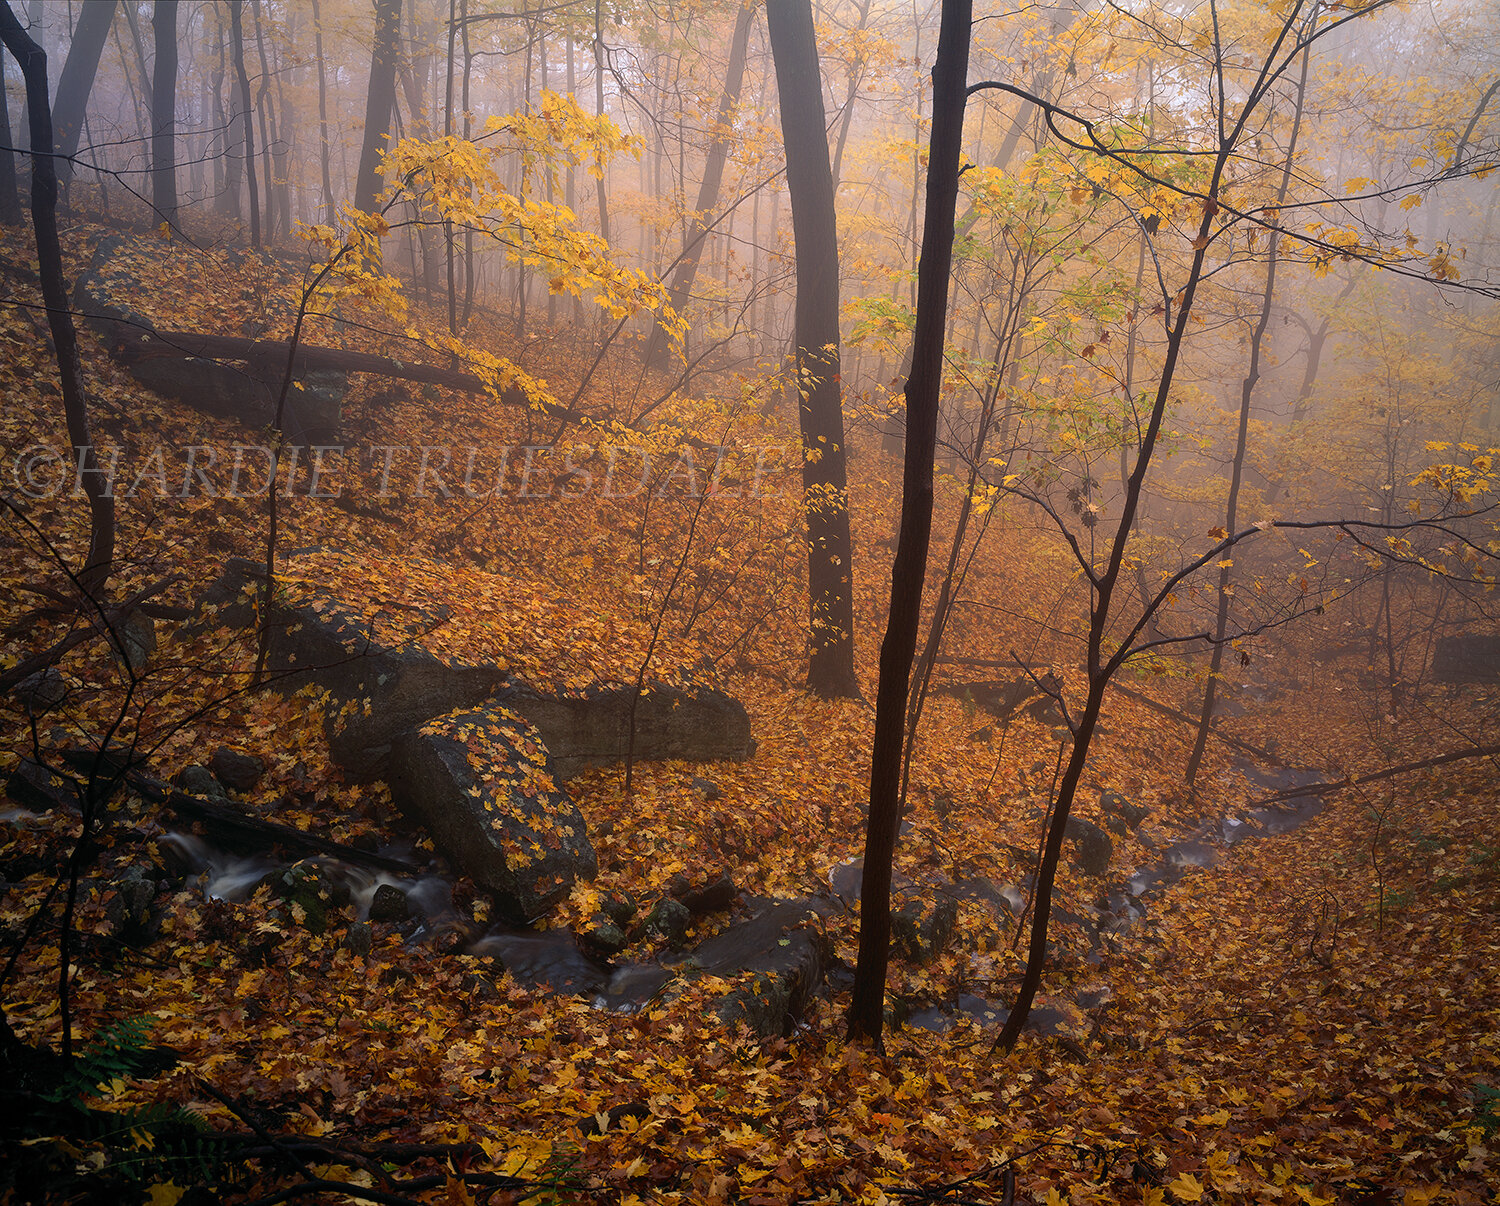 Gks#363 "Fall Mist, Sleepy Hollow"